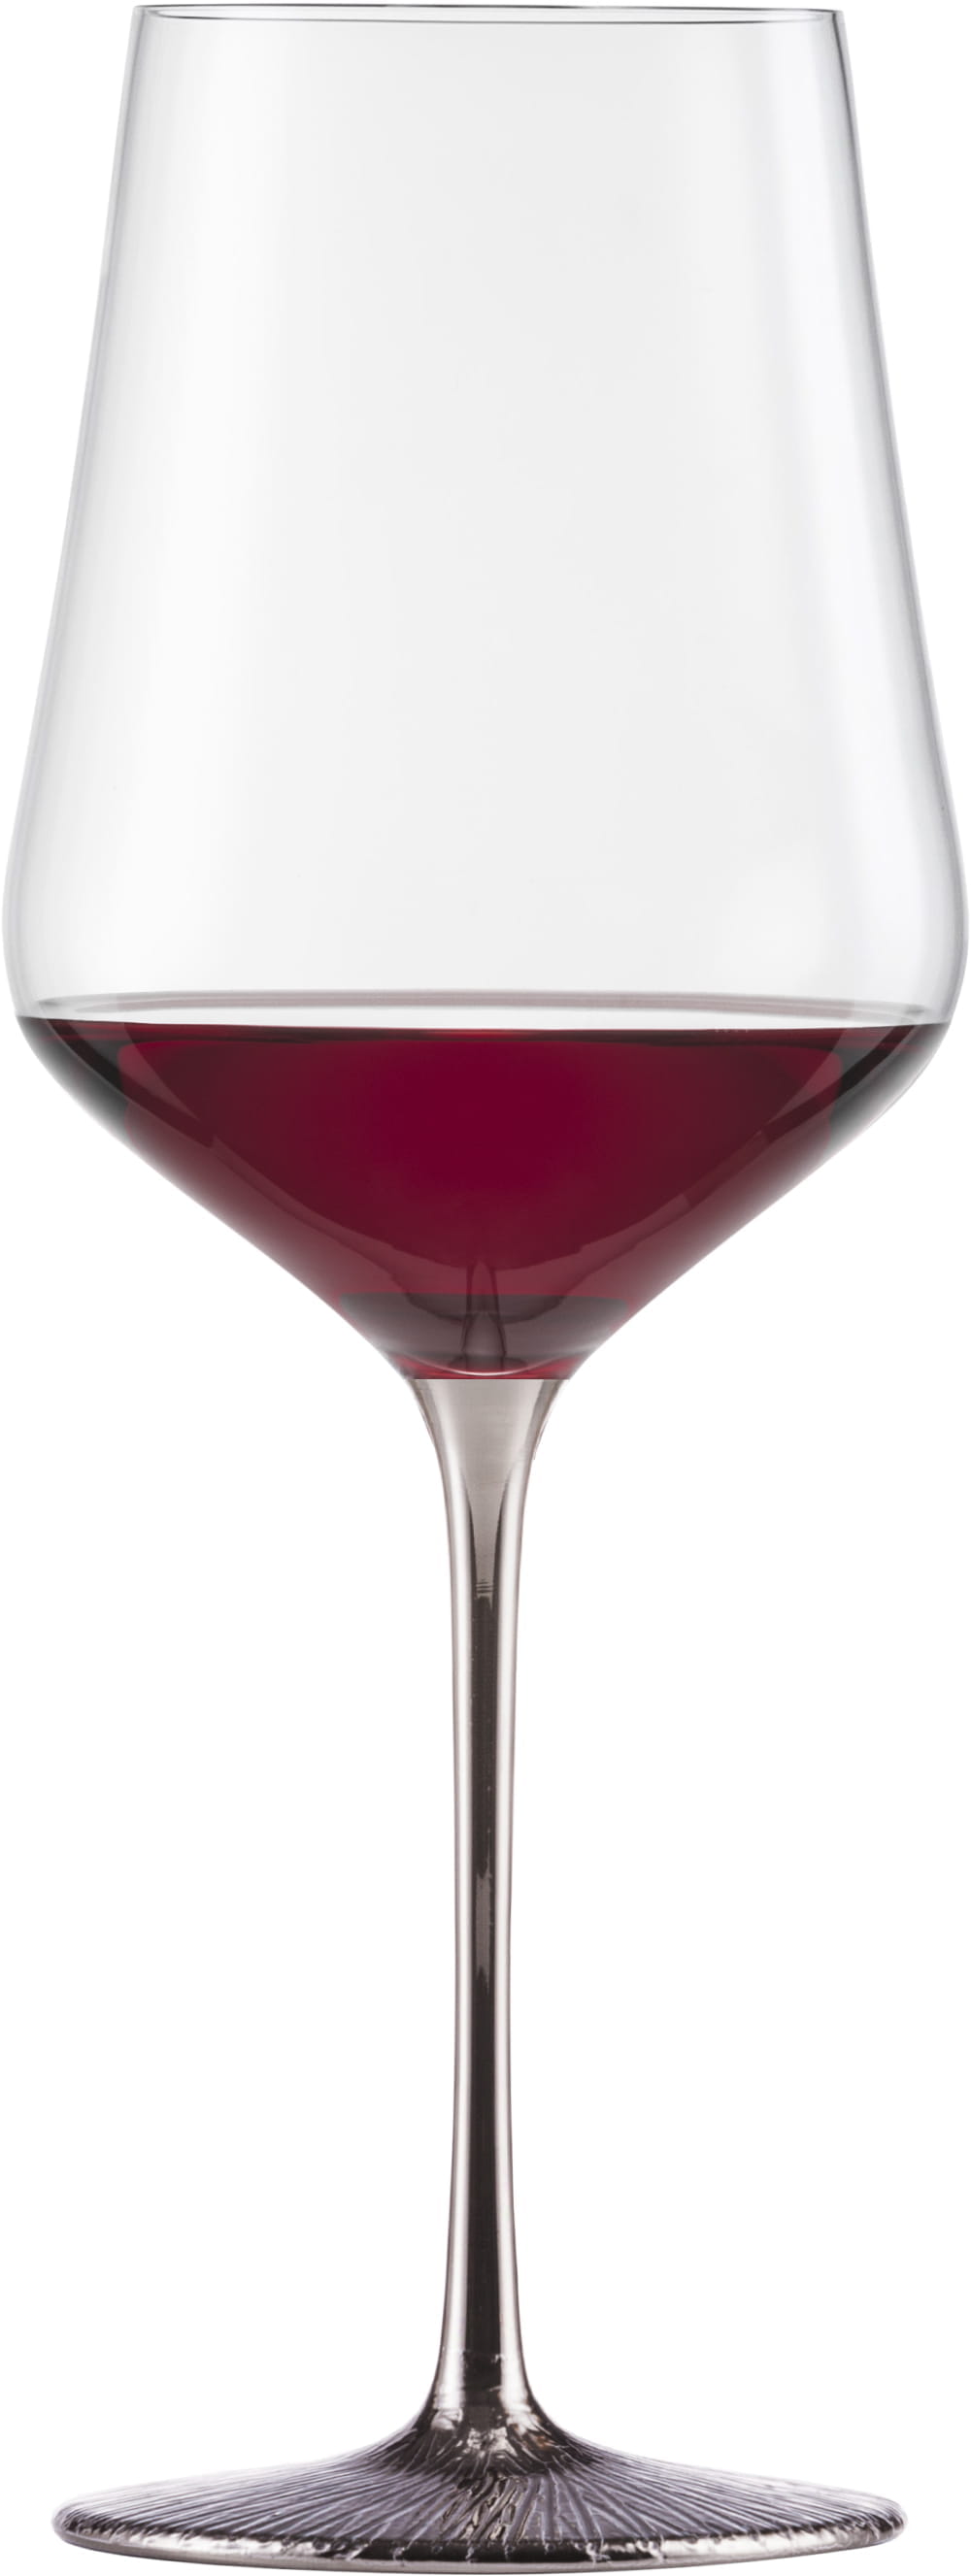 Eisch Glas Ravi Platin 2 Bordeauxgläser 518/21 i.Geschenkkarton Festivity